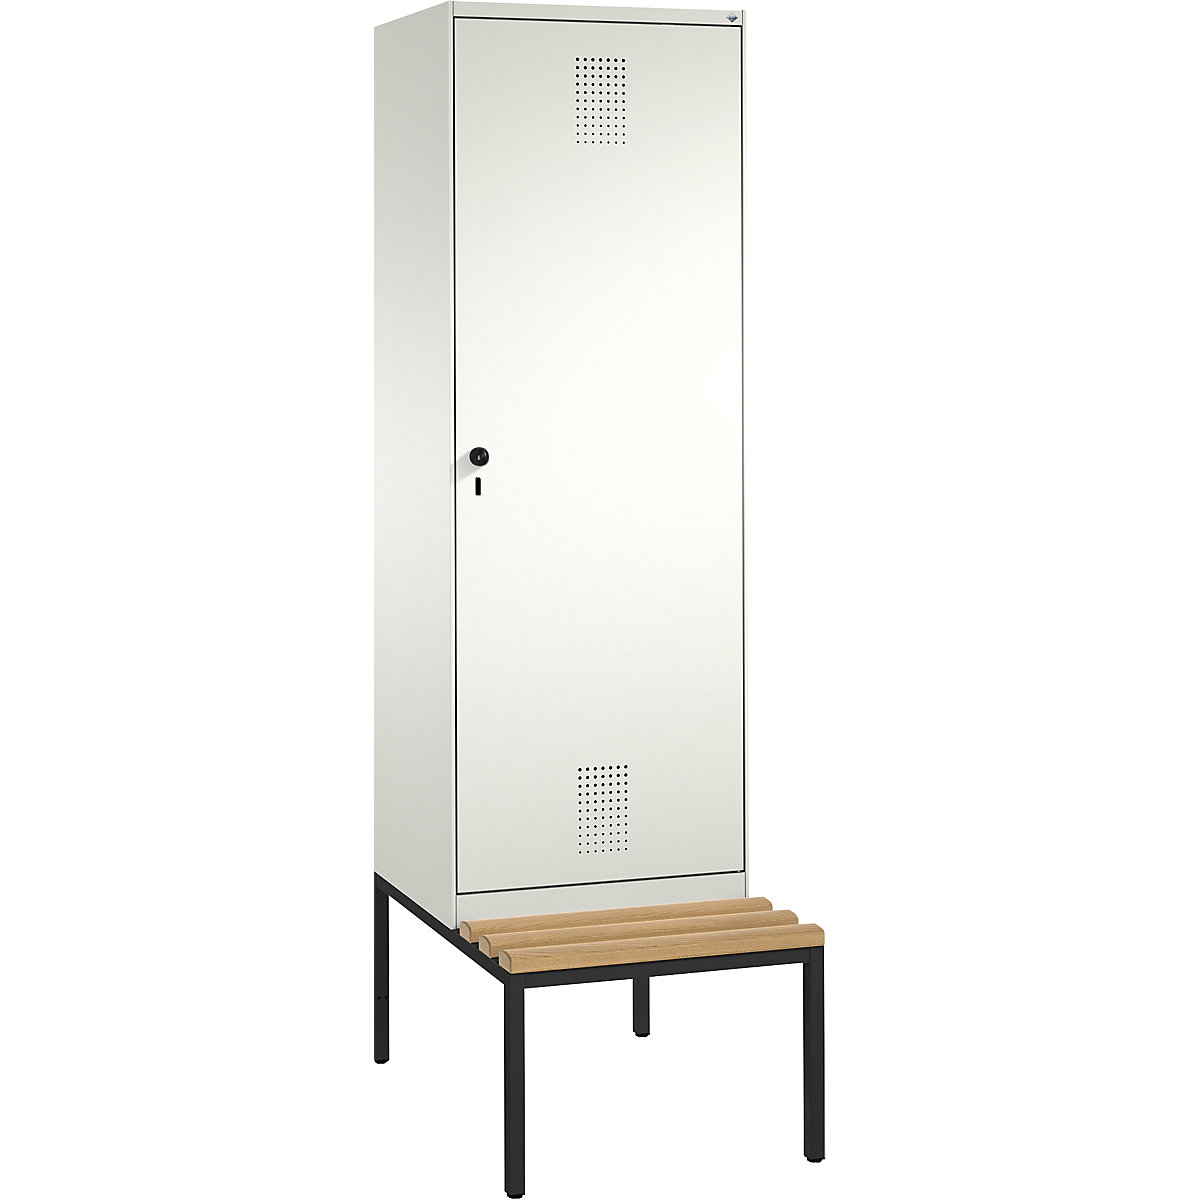 Šatní skříň s lavicí EVOLO s dveřmi přes 2 oddíly – C+P, 2 oddíly, 1 dveře, šířka oddílu 300 mm, čistá bílá / čistá bílá-10